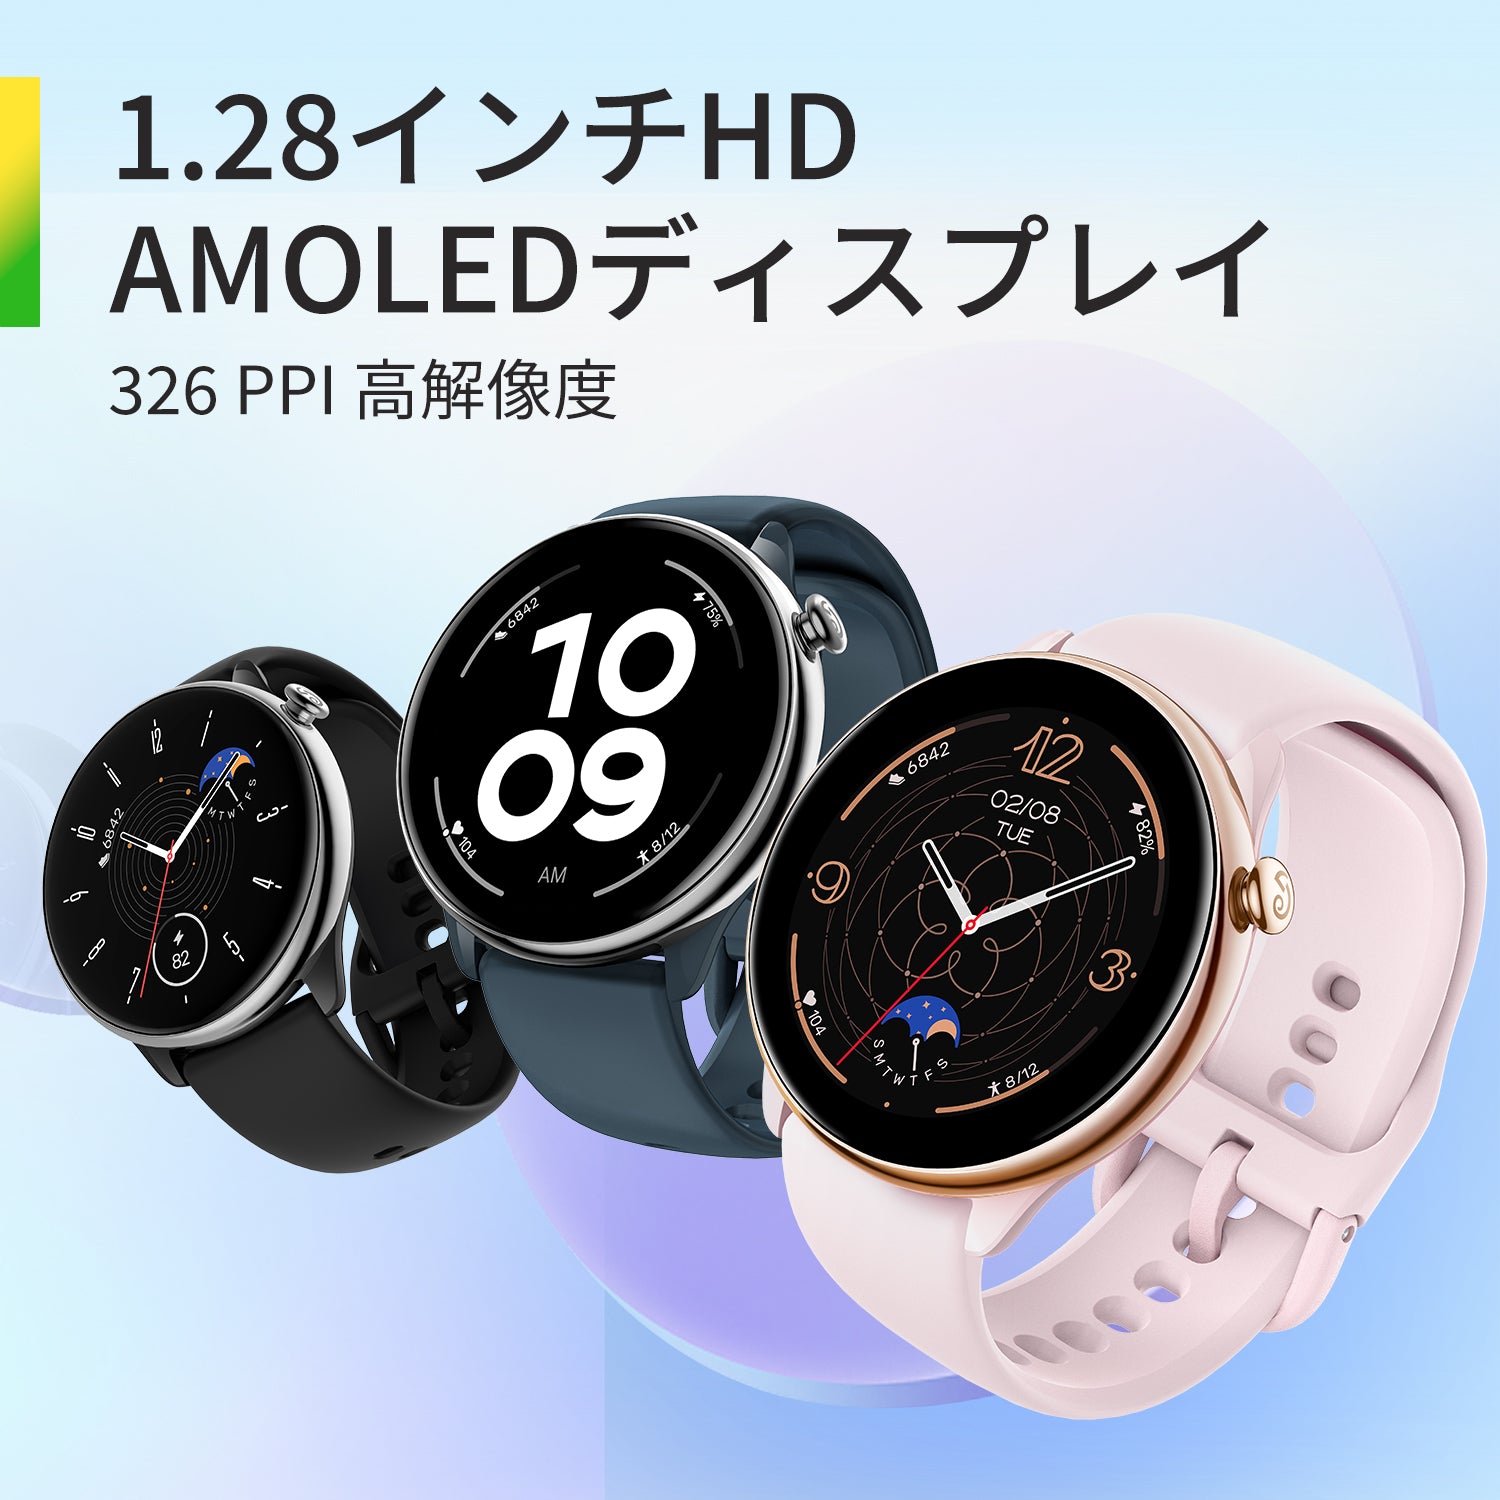 腕時計(デジタル)amazfit GTR Mini　スマートウォッチ